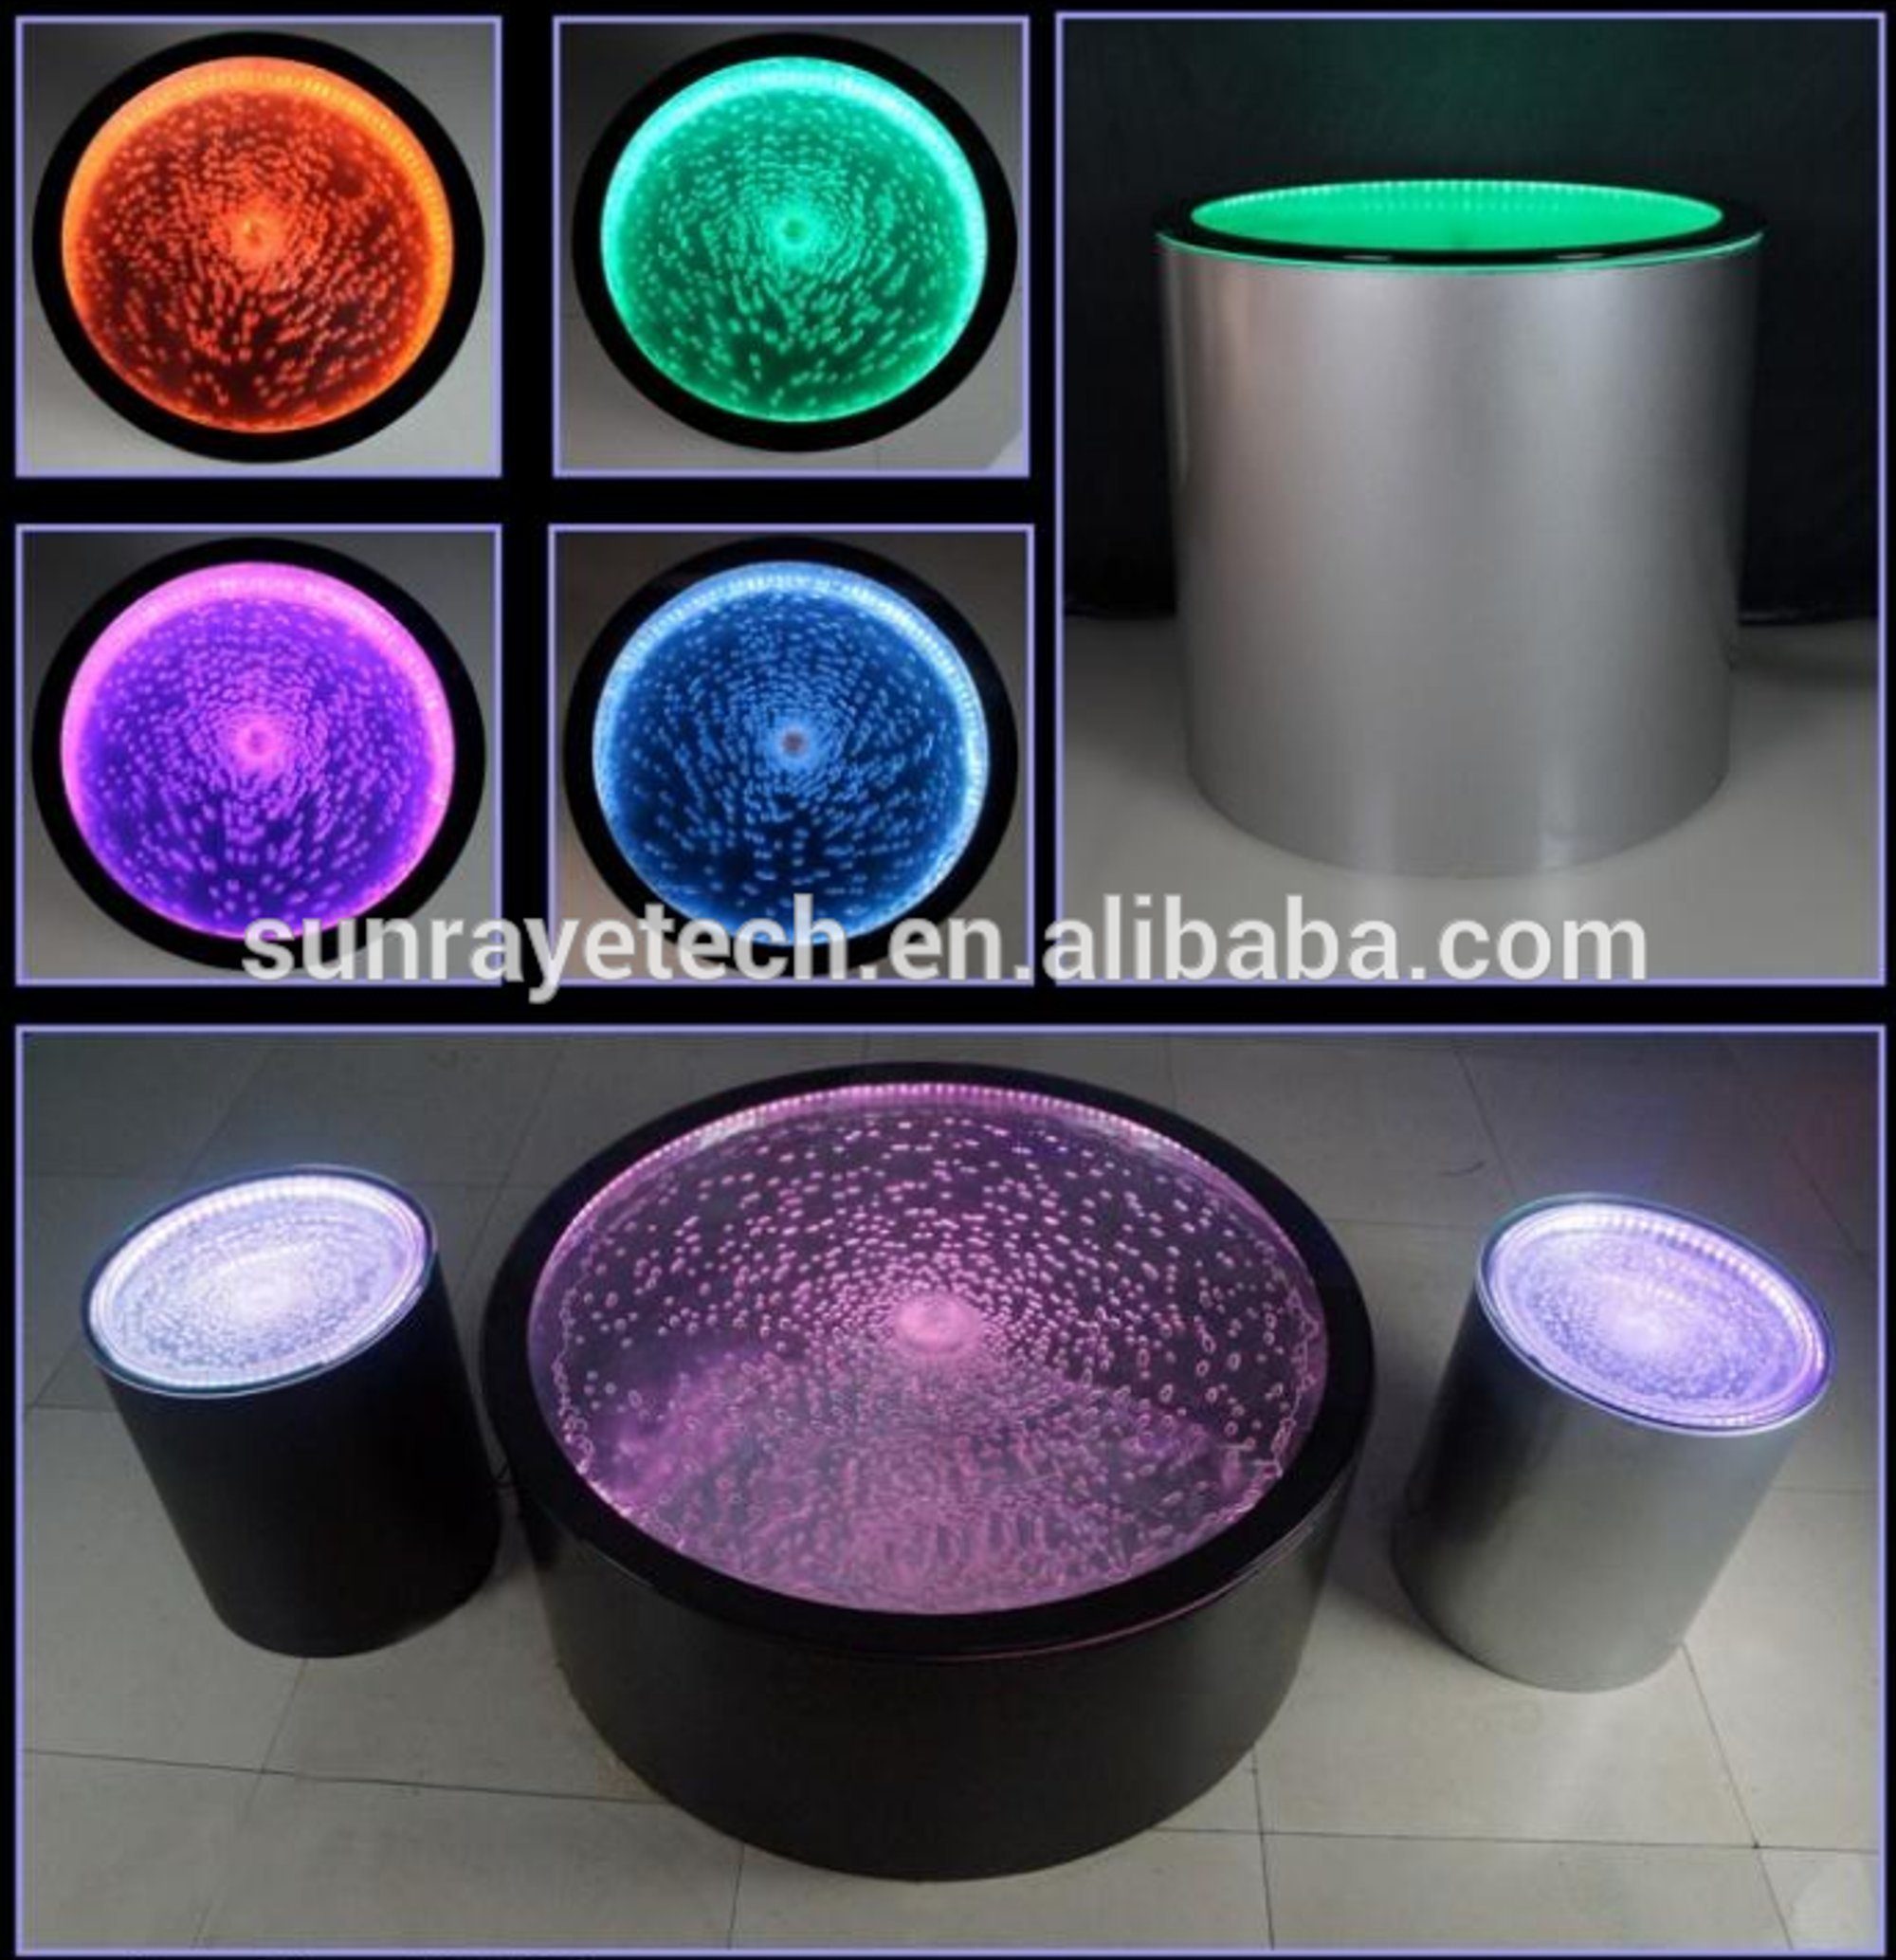 In Couchtisch LED Tisch JVmoebel Europe Water Beleuchtet, Tische Wasser Design Couchtisch Made Säulen